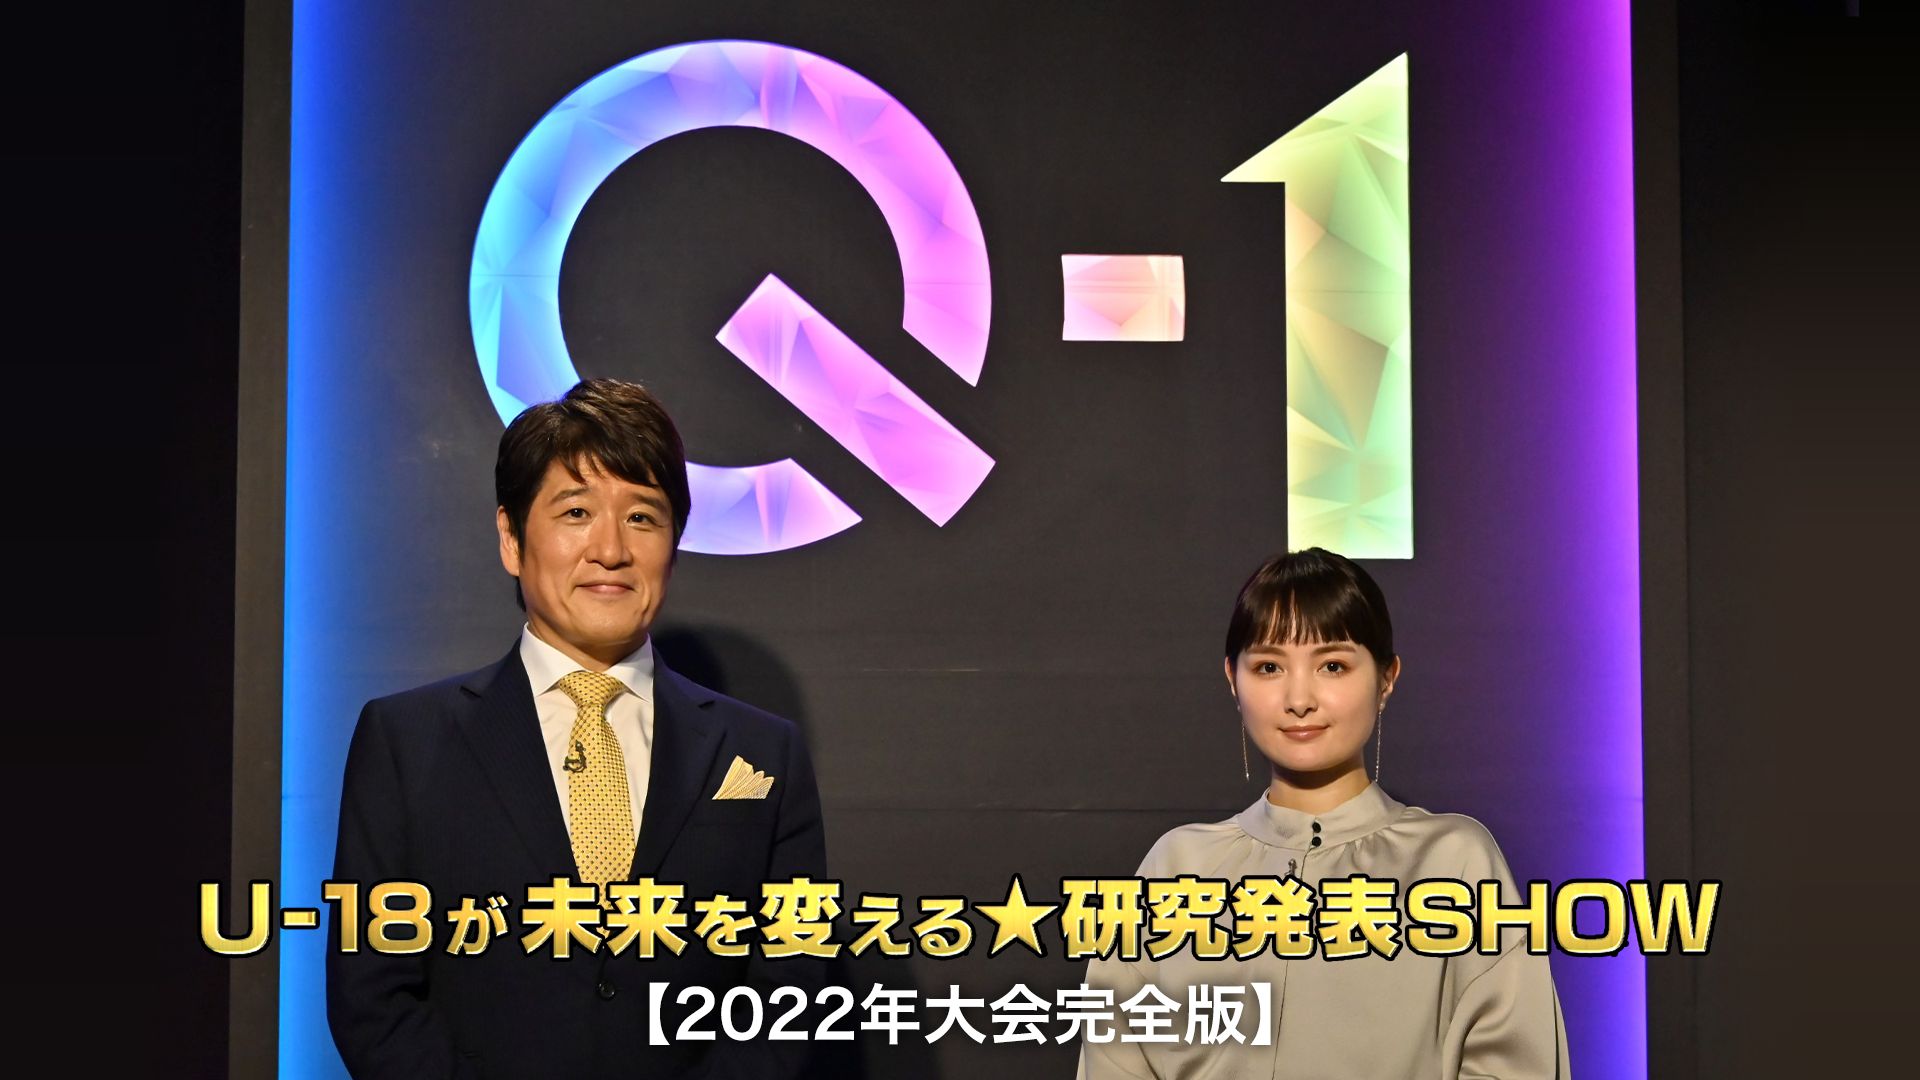 Q-1 〜U-18が未来を変える★研究発表SHOW〜【2022年大会完全版】